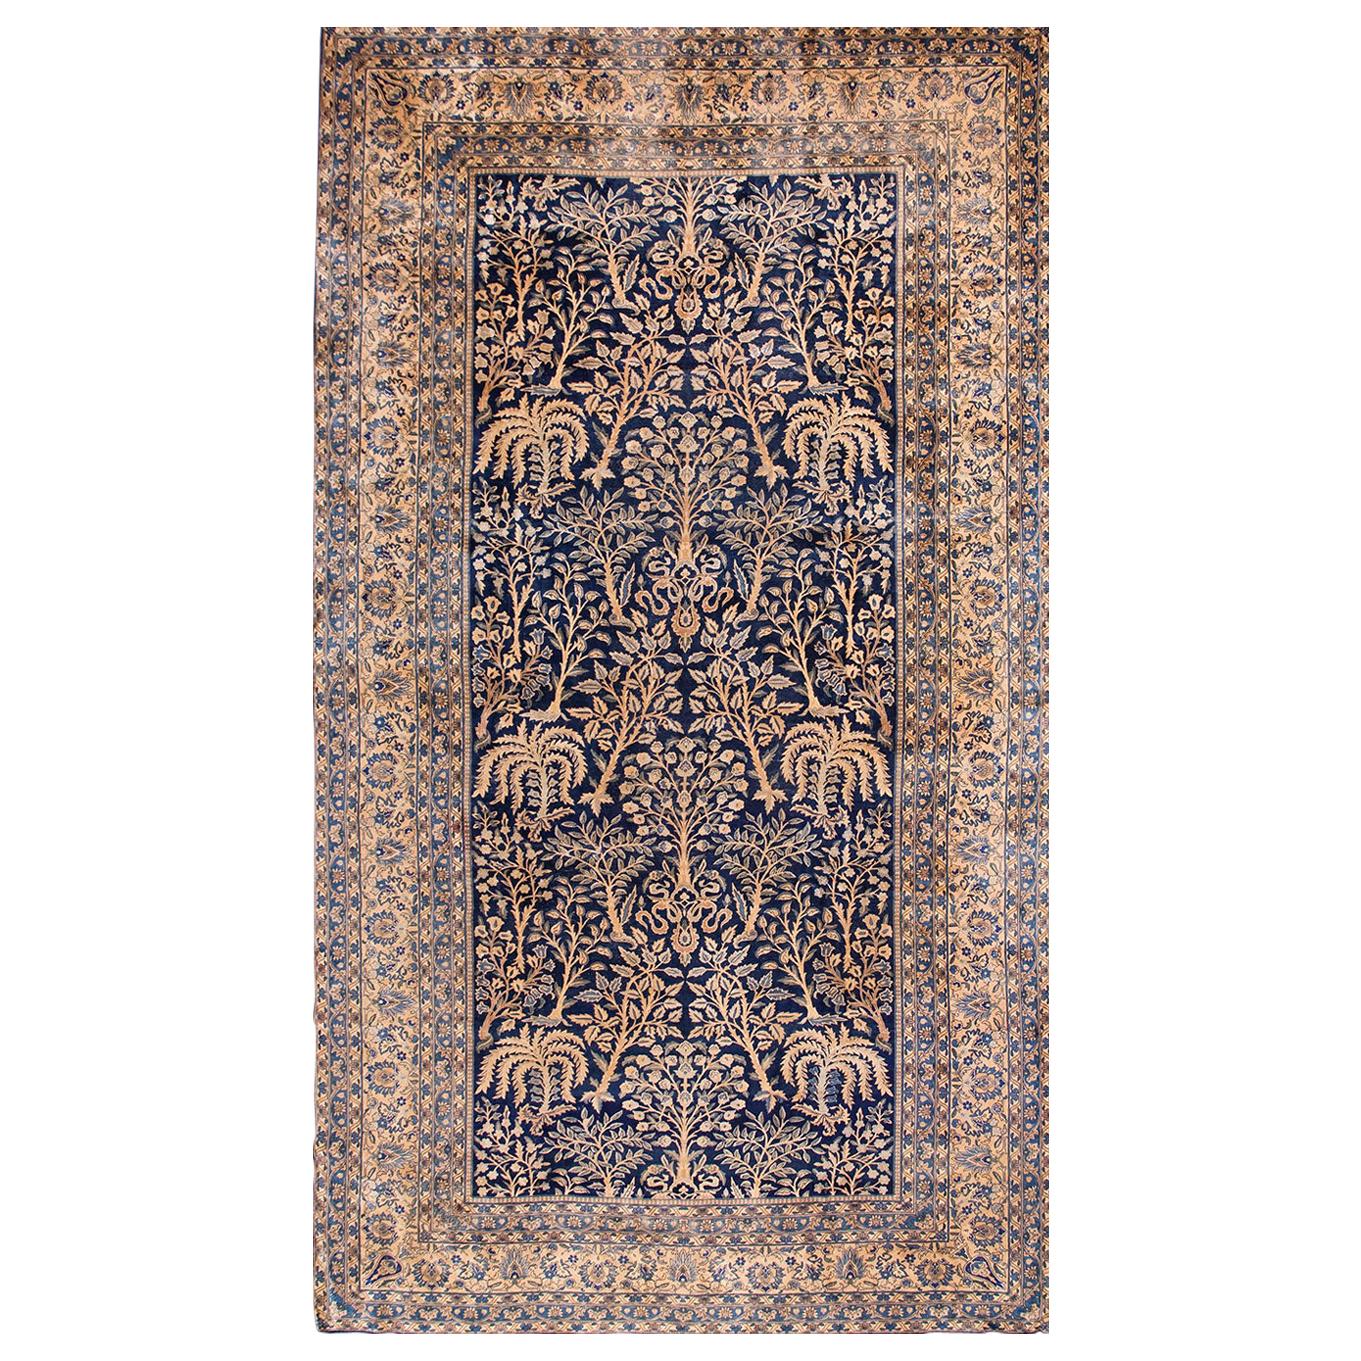 Indischer Lahore-Teppich des frühen 20. Jahrhunderts ( 9'10" x 17'10" - 300 x 545)